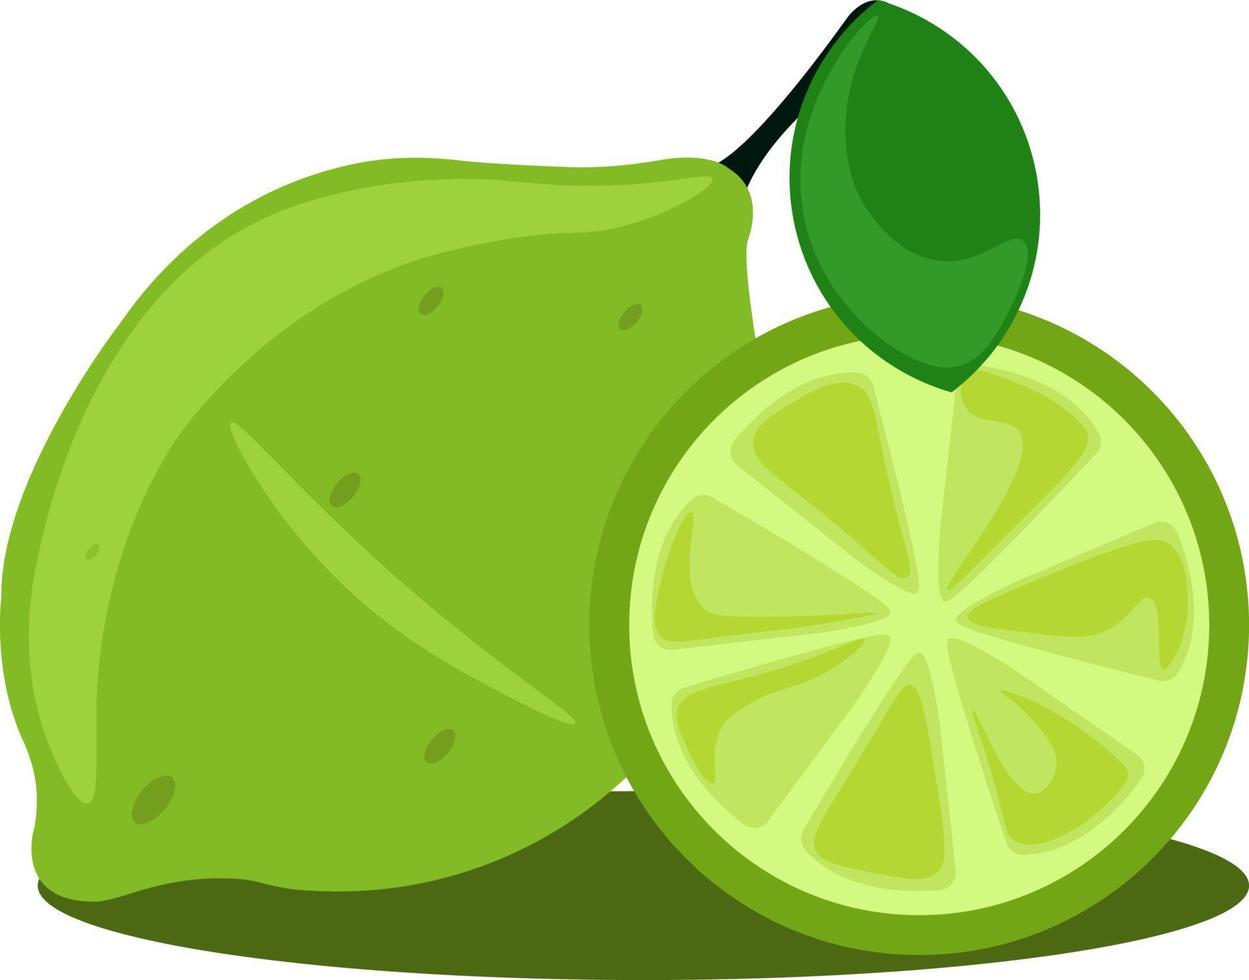 citron vert, illustration, vecteur sur fond blanc.